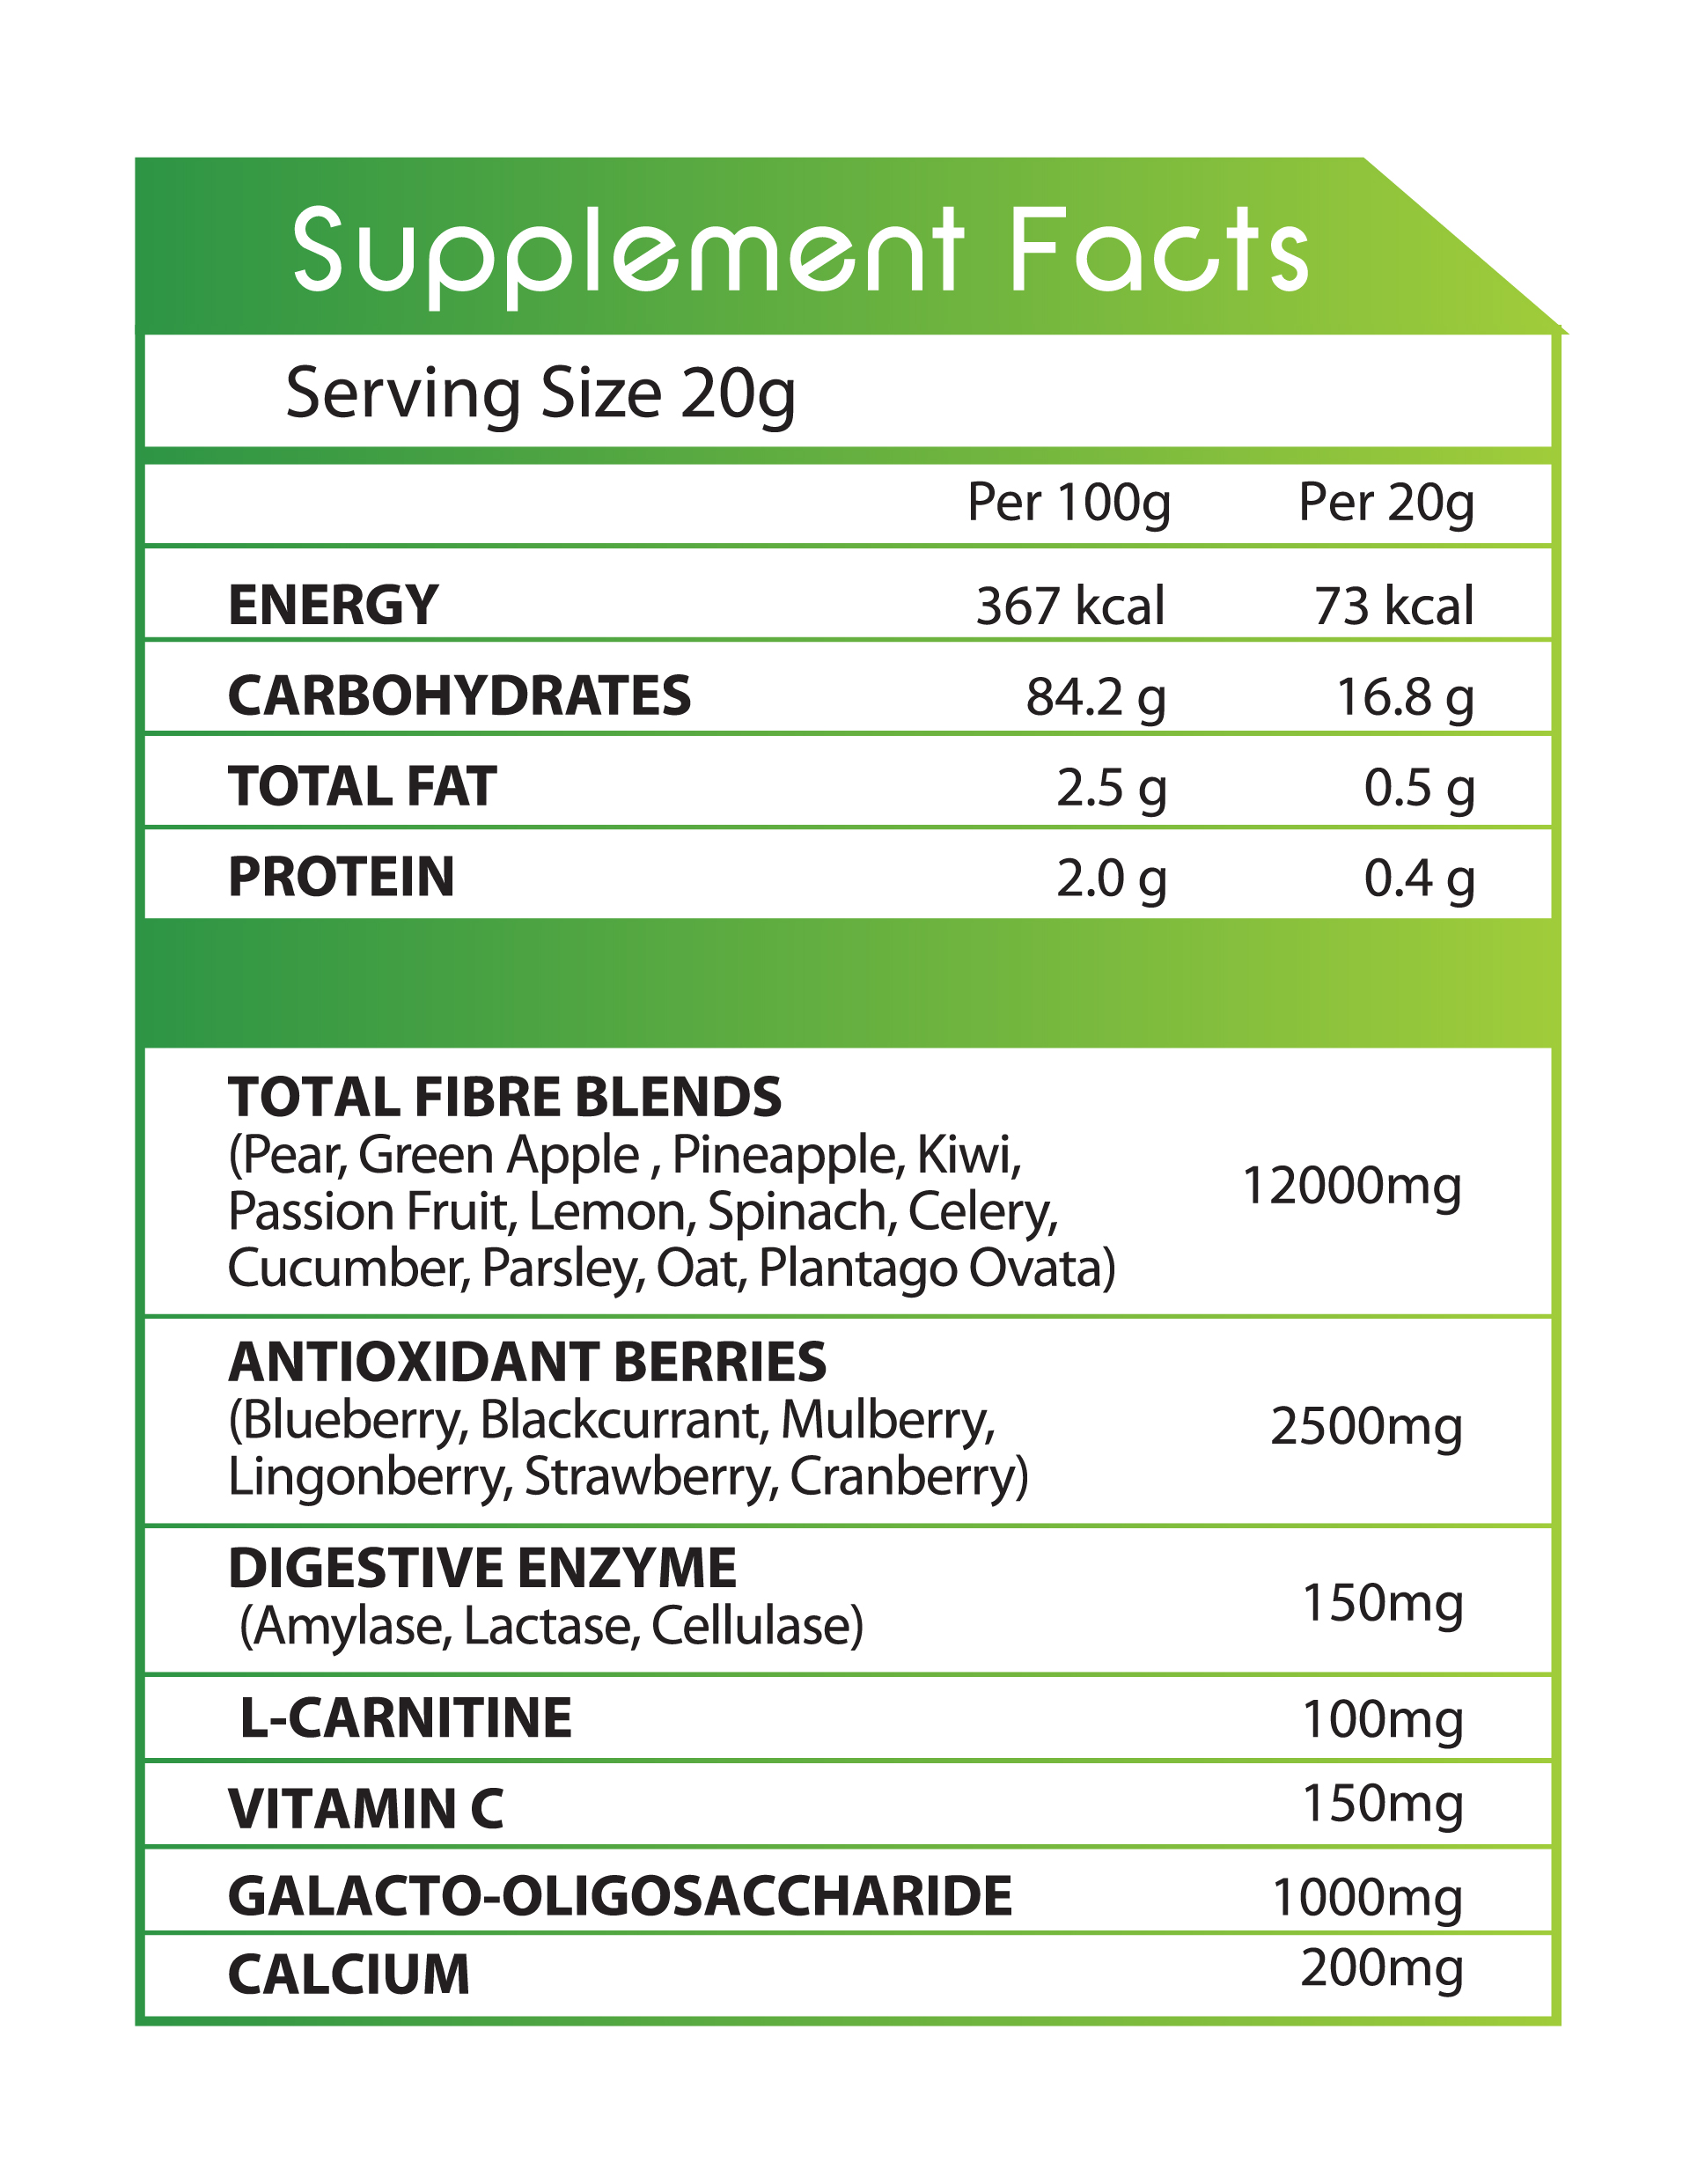 CG Fiber Ingredients Supplement Facts